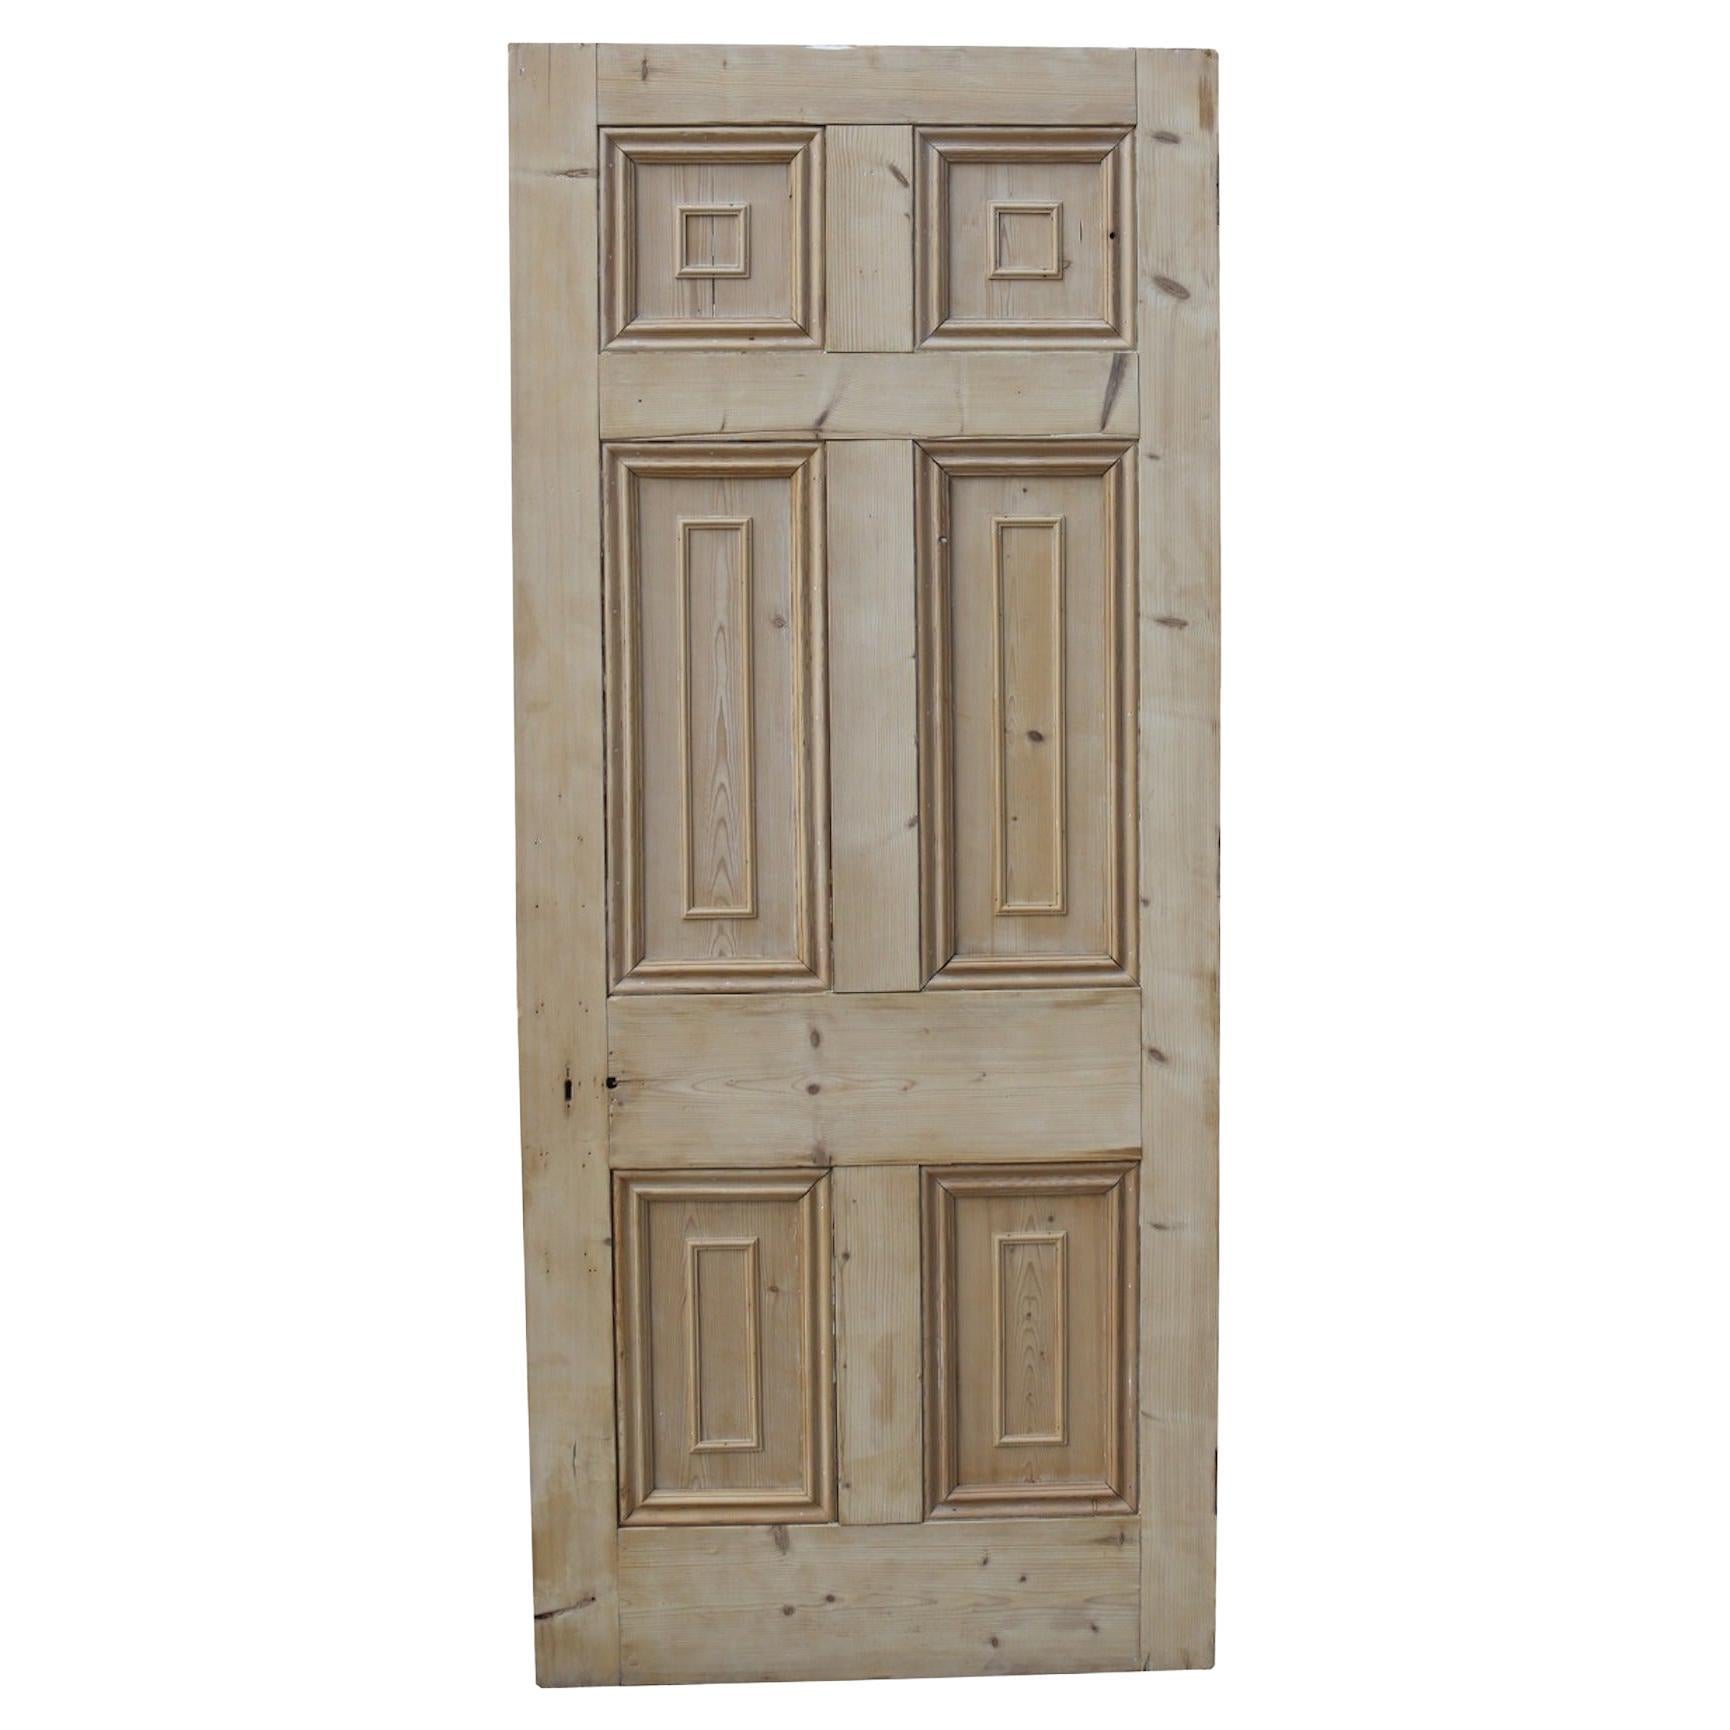 Georgian Era Six Panelled Interior Door For Sale